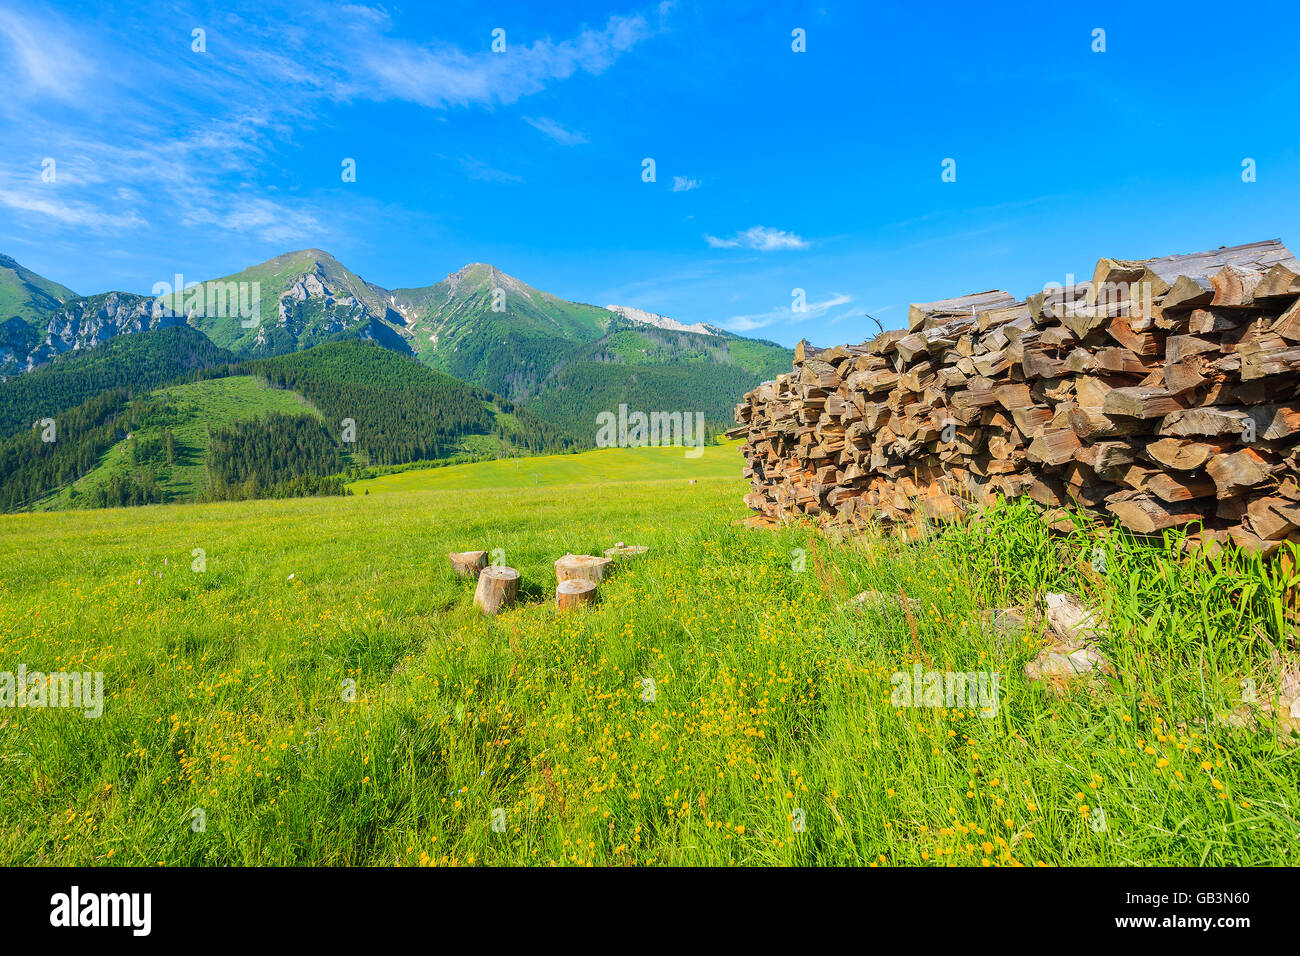 Tas de bois sur le pré vert avec des fleurs en été paysage de montagnes Tatras, Slovaquie Banque D'Images